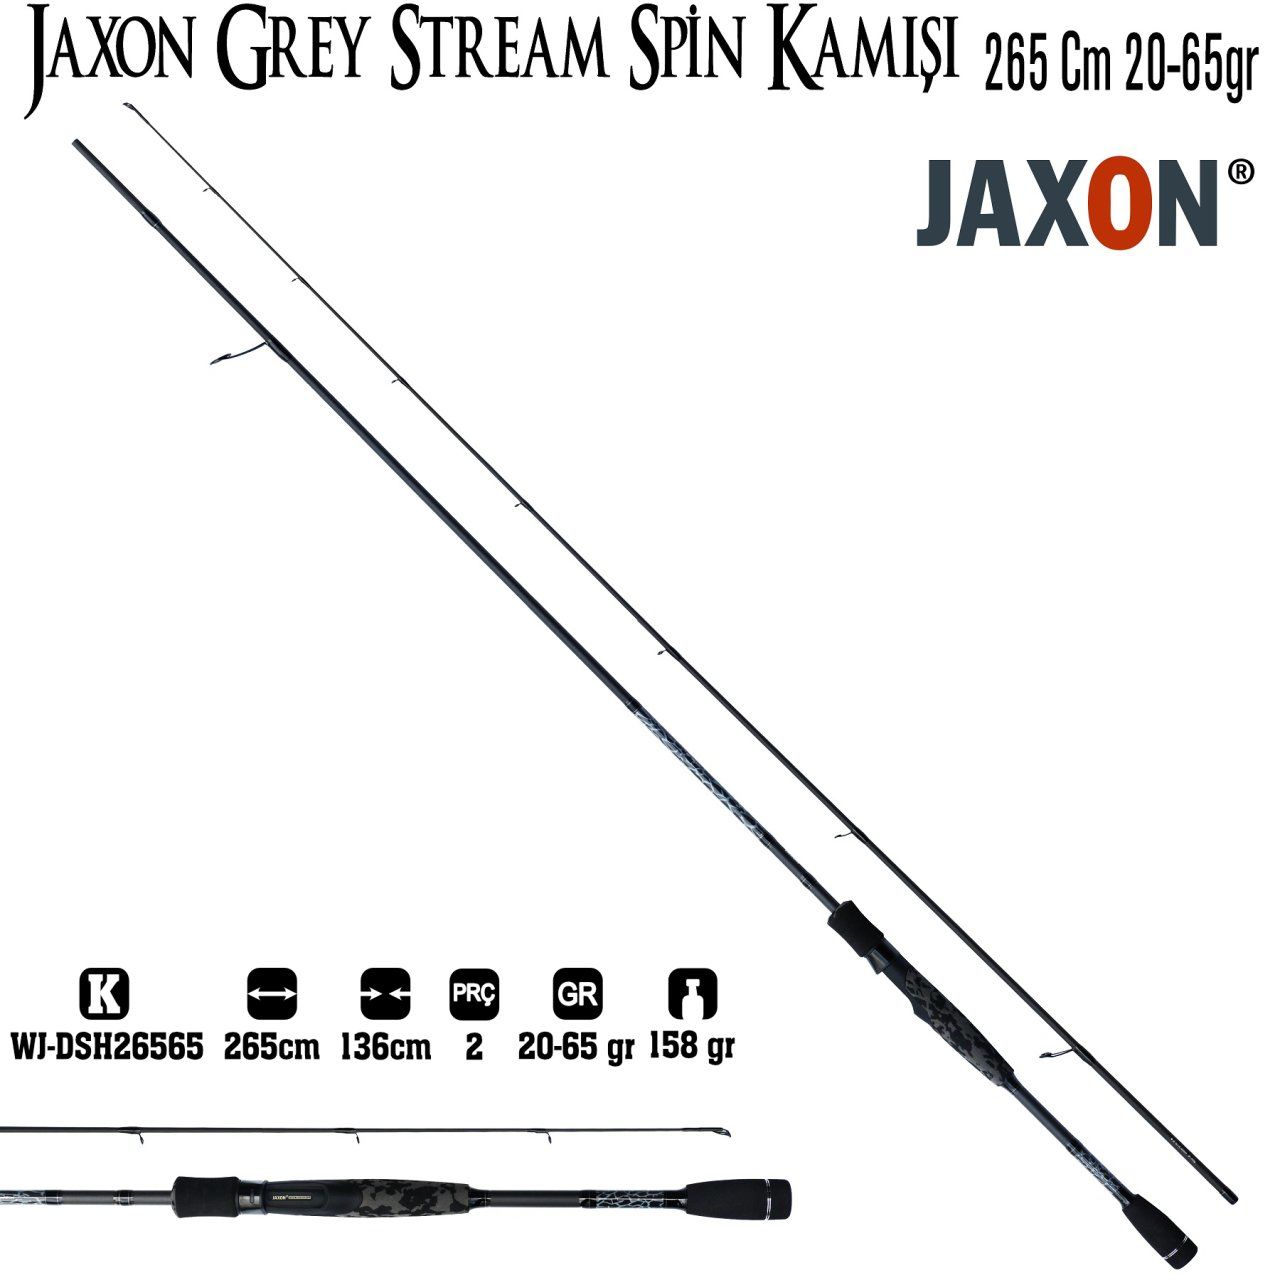 Jaxon Grey Stream Spin Kamışı 265 Cm 20-65g